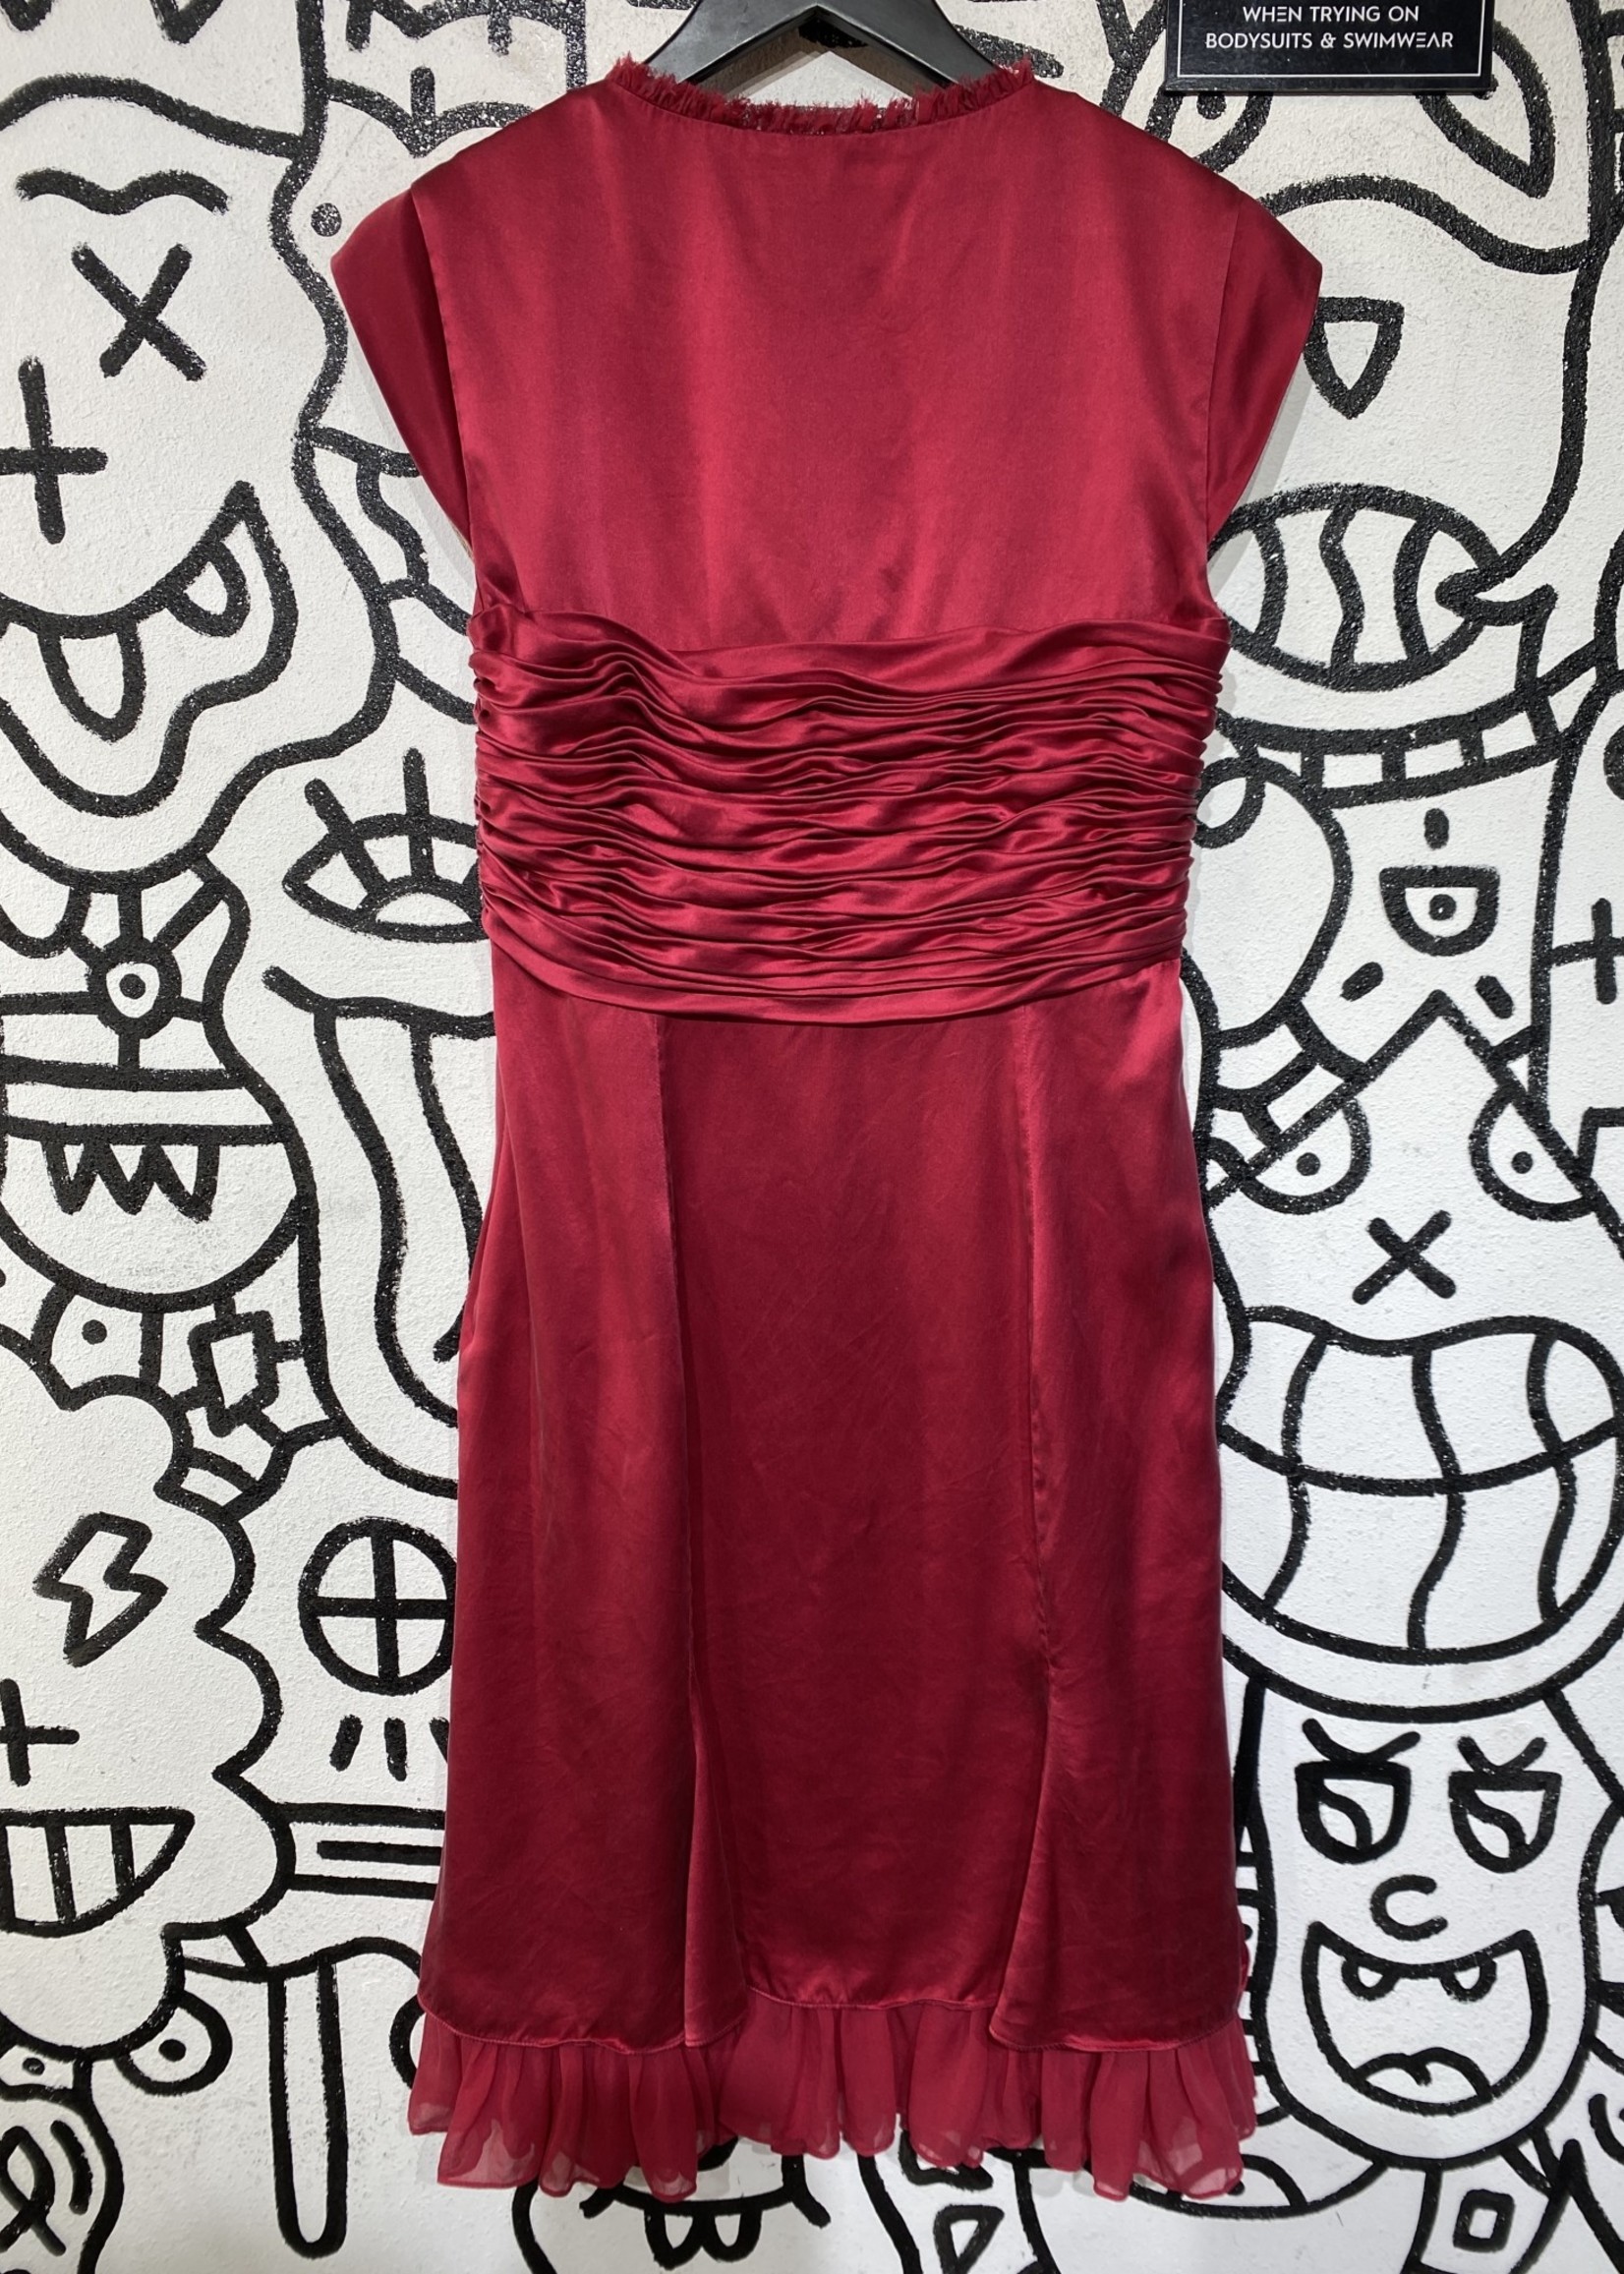 Cinq a Sept Red Silk Dress 10/M (Retail: $300+)